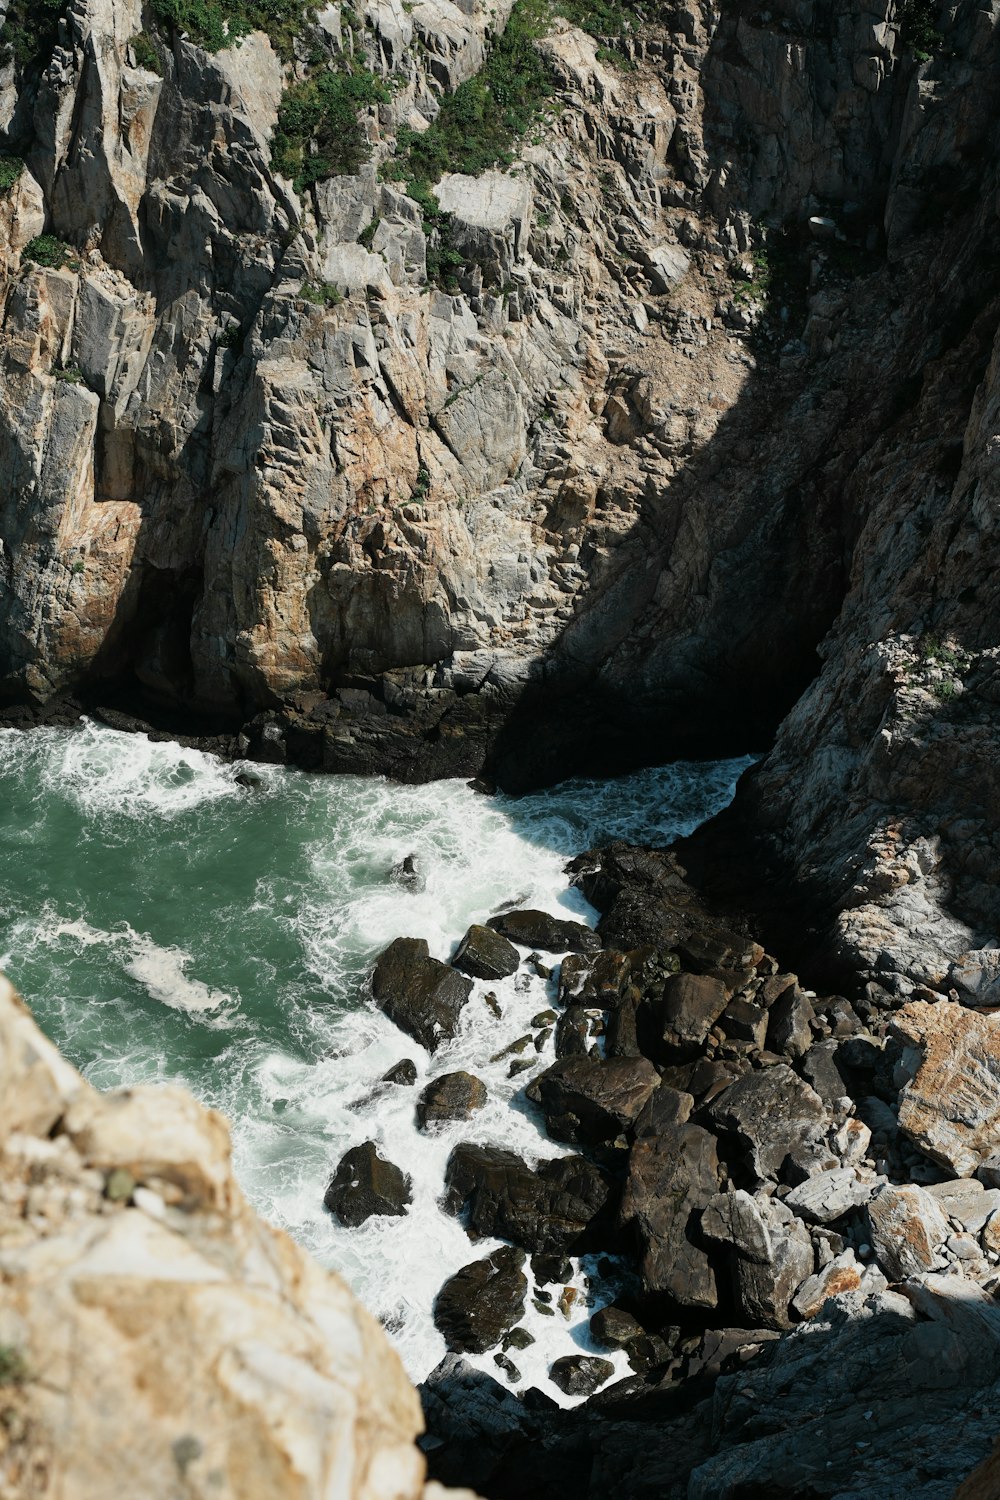 Una vista de un cuerpo de agua cerca de un acantilado rocoso